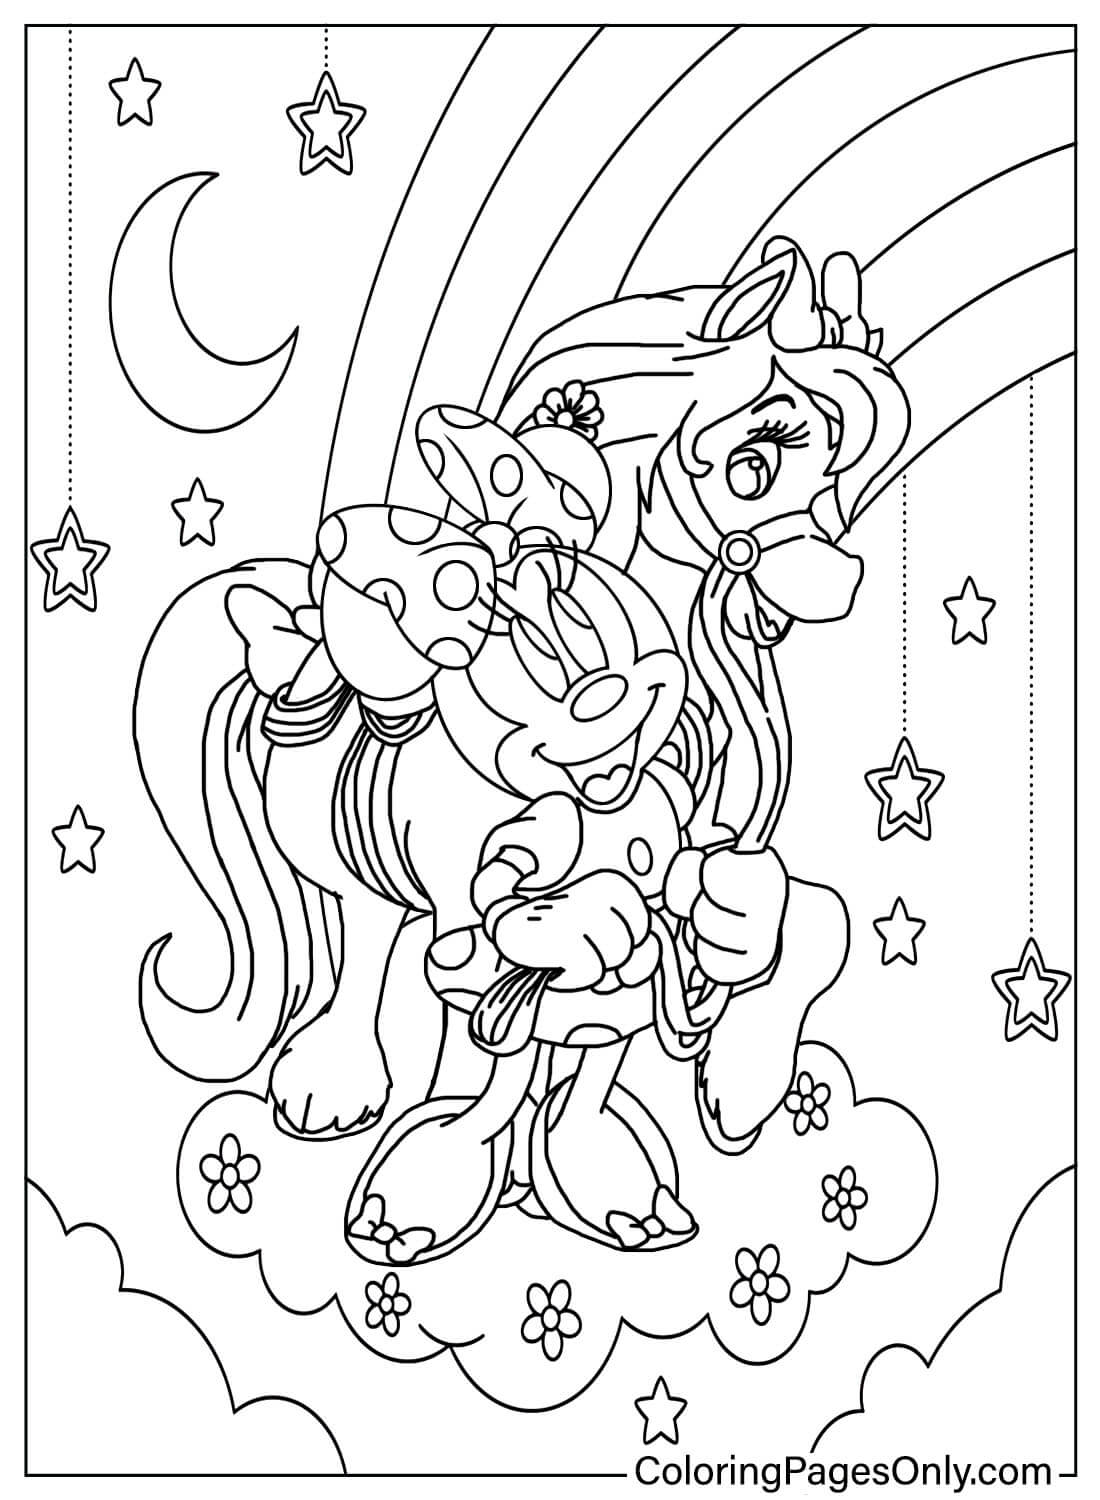 Página para colorear de Minnie Mouse y Pony de Minnie Mouse